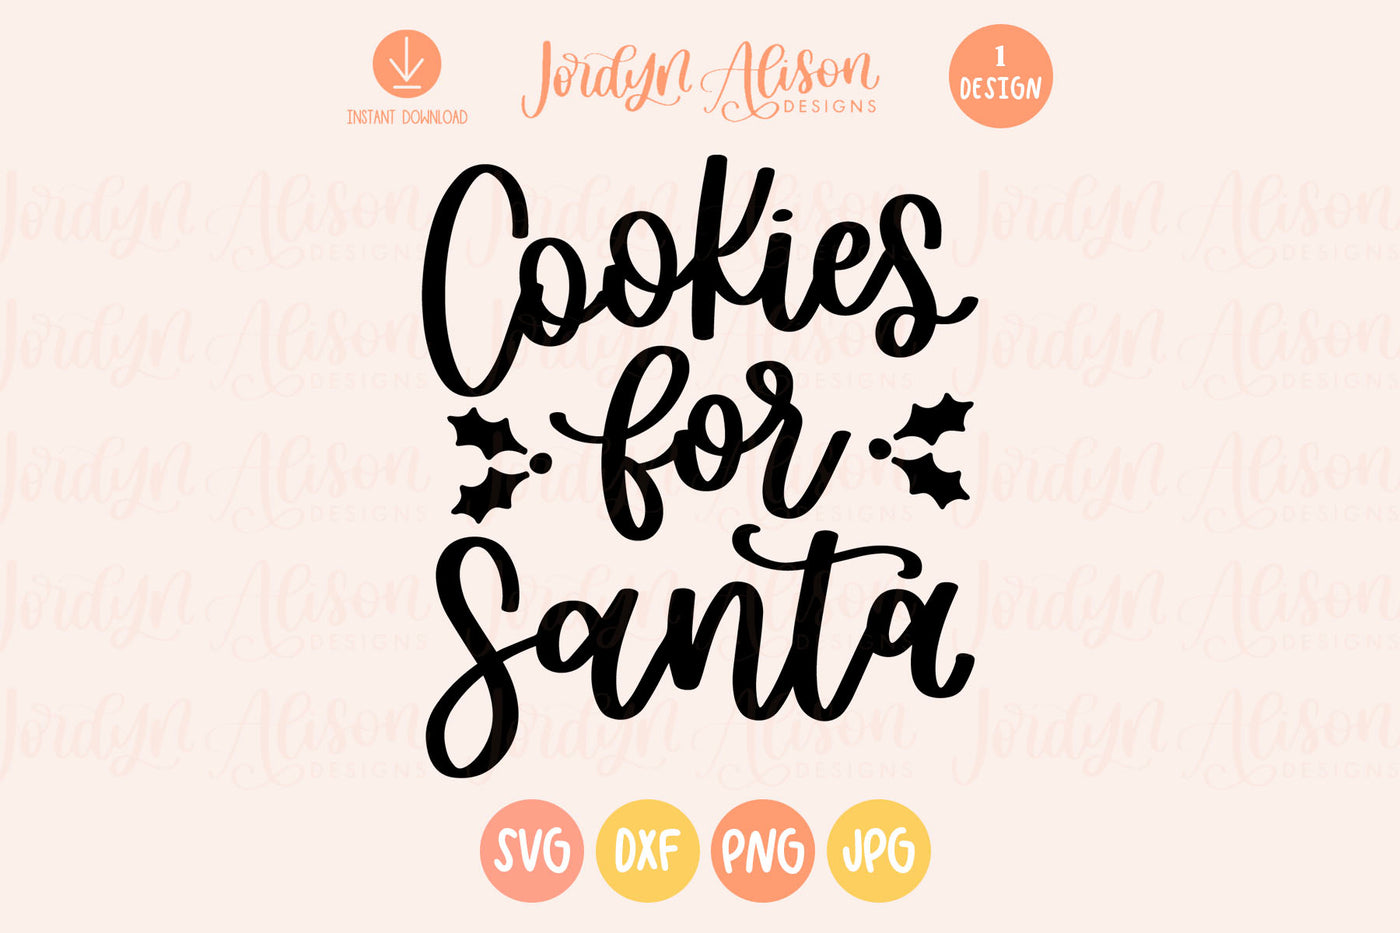 Cookies for Santa Christmas SVG